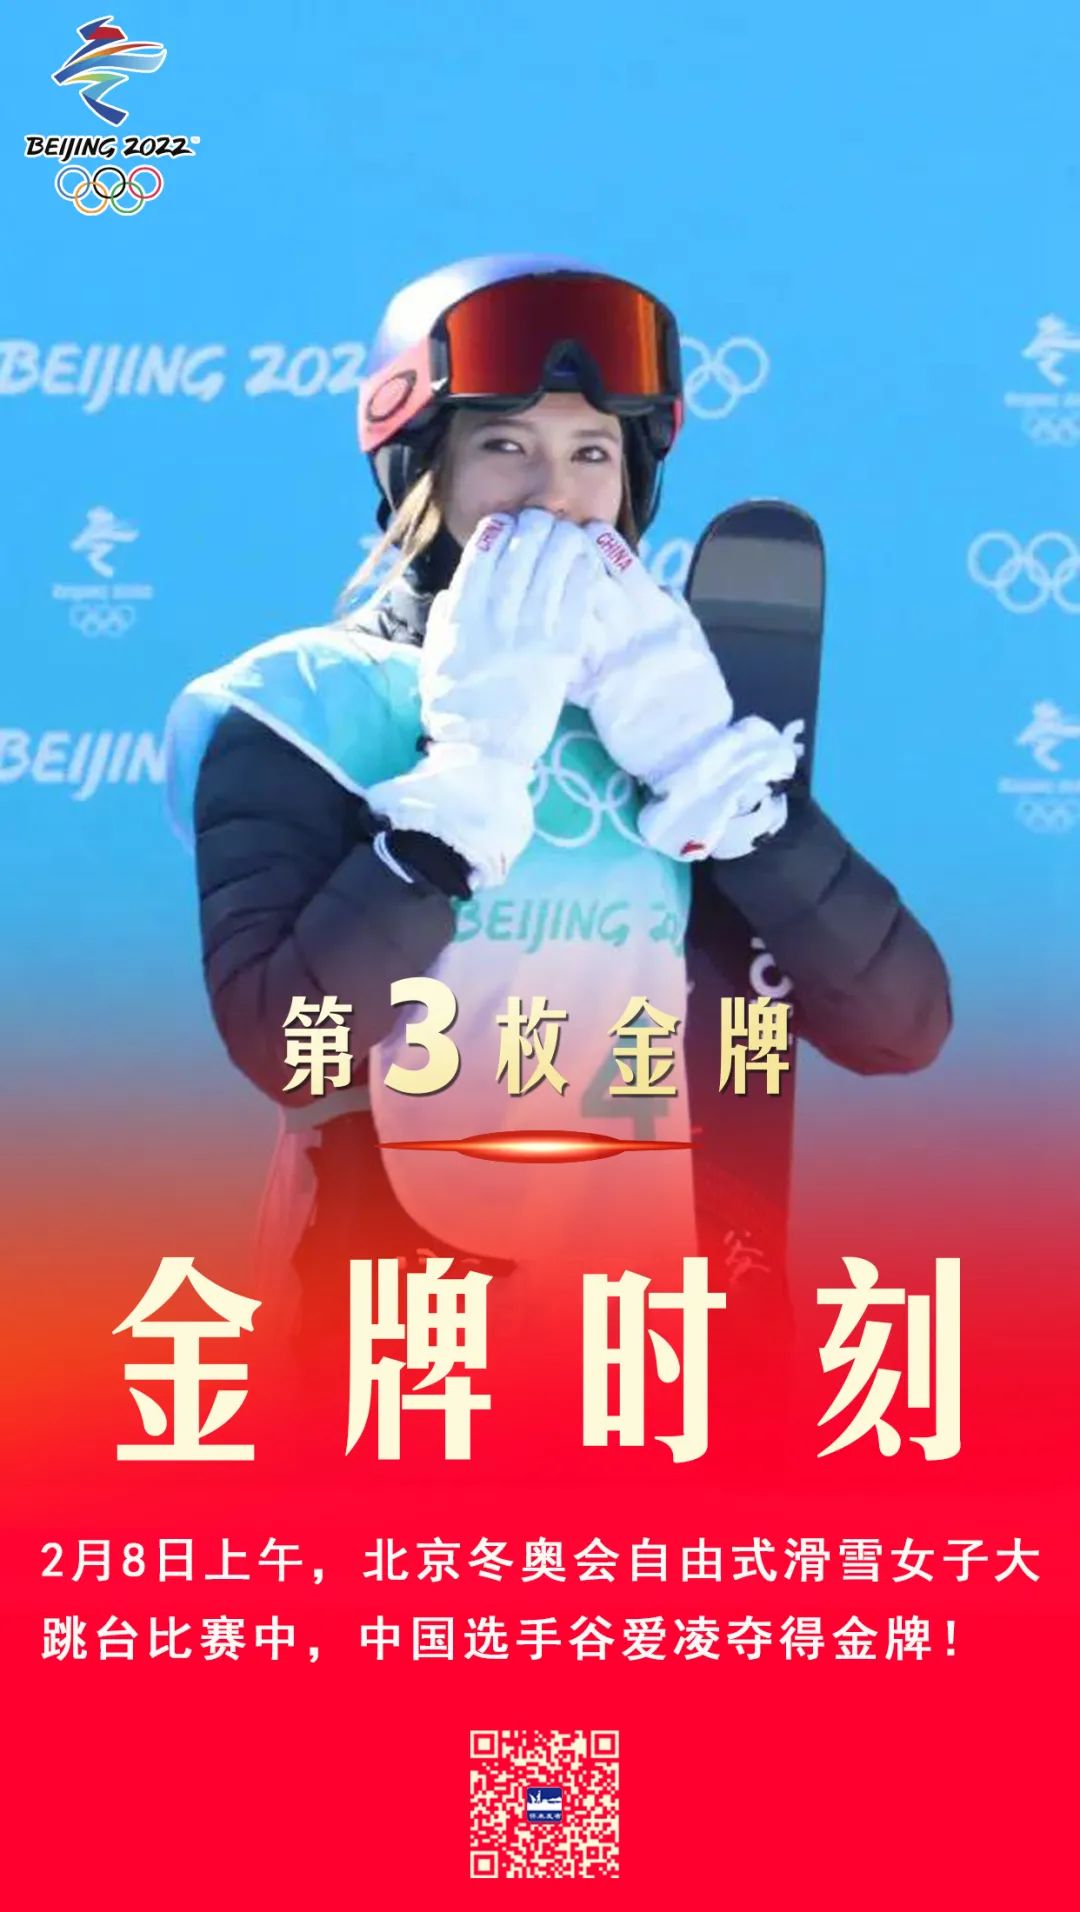 北京冬奥会第1金图片